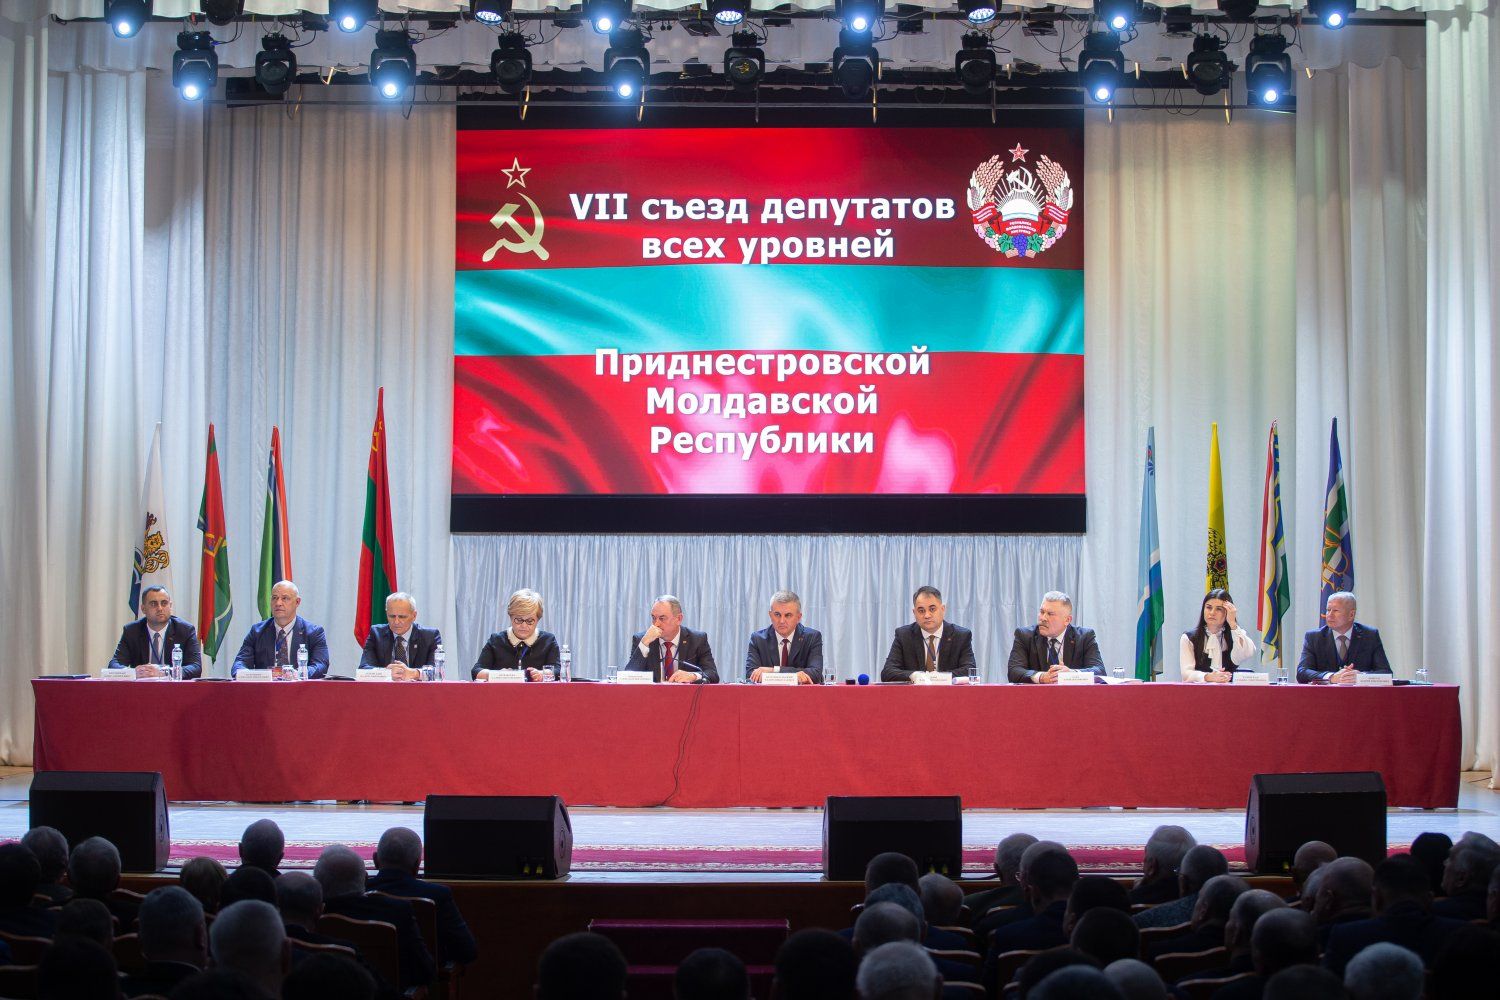 Transnistria a cerut ajutorul Rusiei. Dar cum Rusia poate „ajuta”?